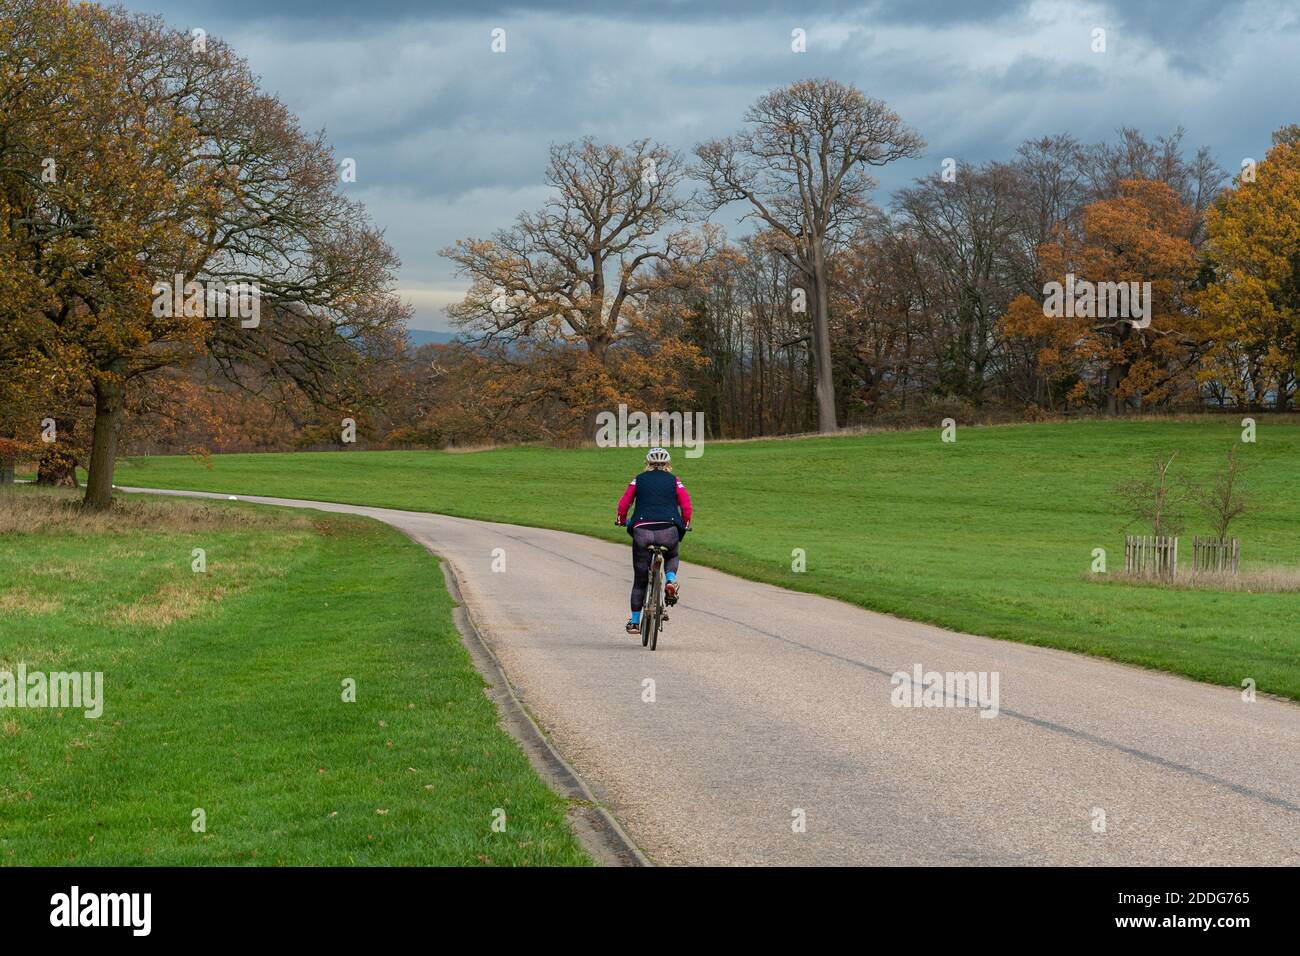 Cycliste traversant le Grand parc de Windsor dans le Berkshire, au Royaume-Uni, à la fin de l'automne ou en novembre Banque D'Images